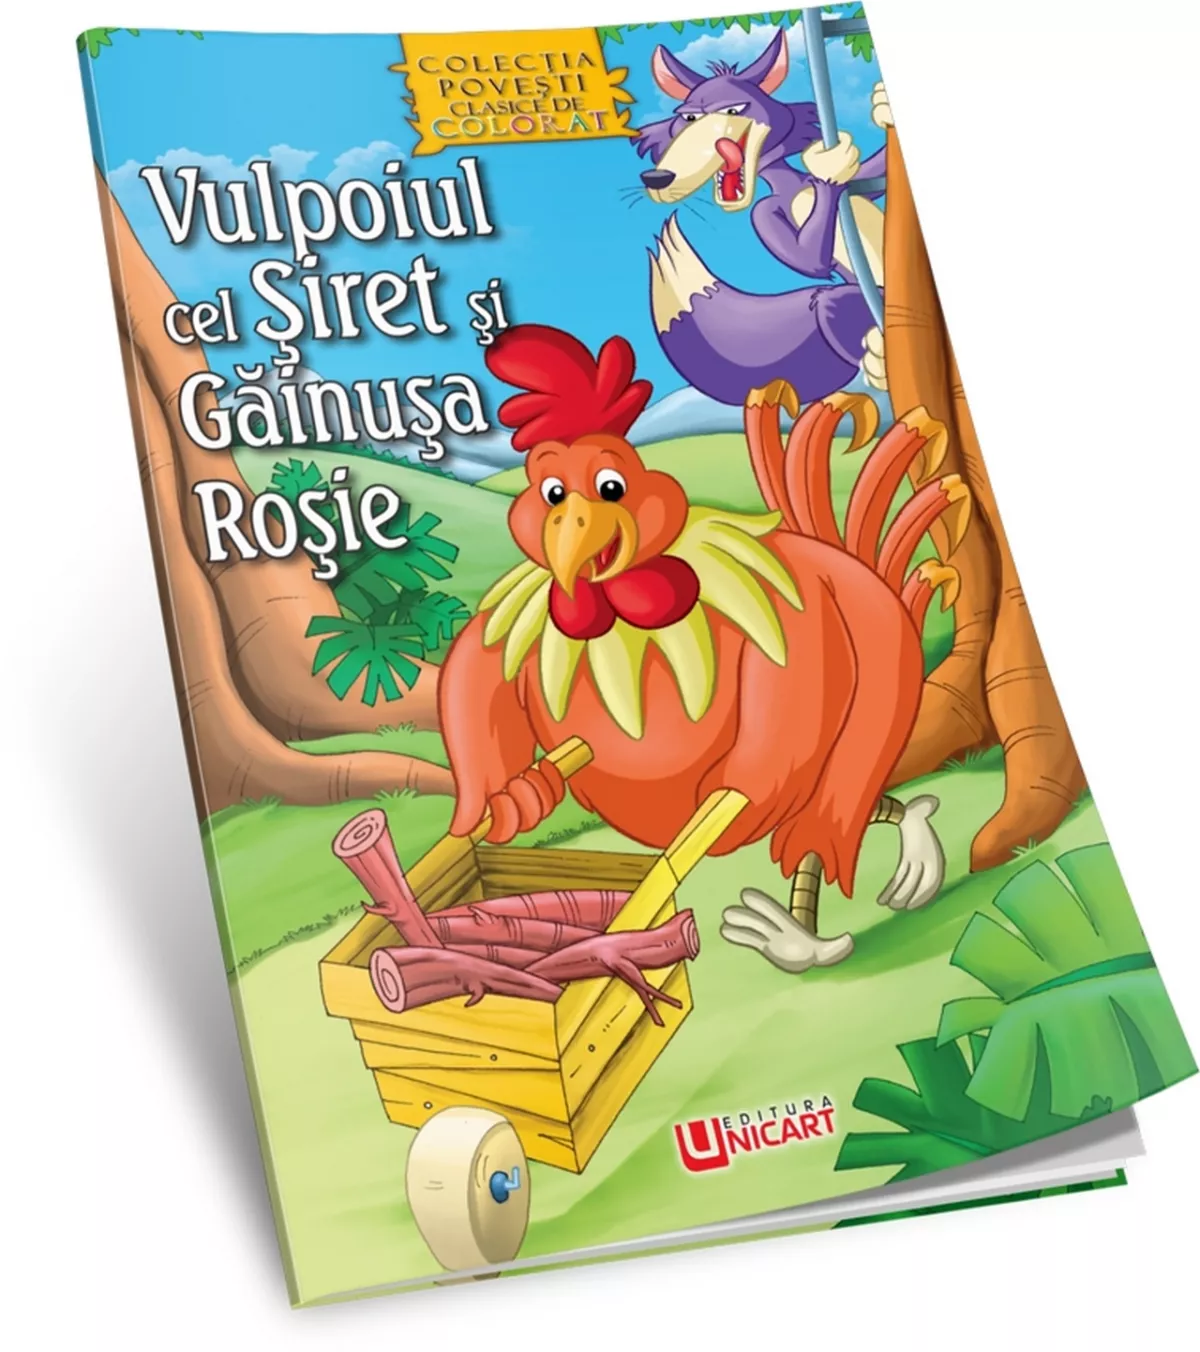 Vulpoiul cel siret si gainusa rosie, carte de colorat A4